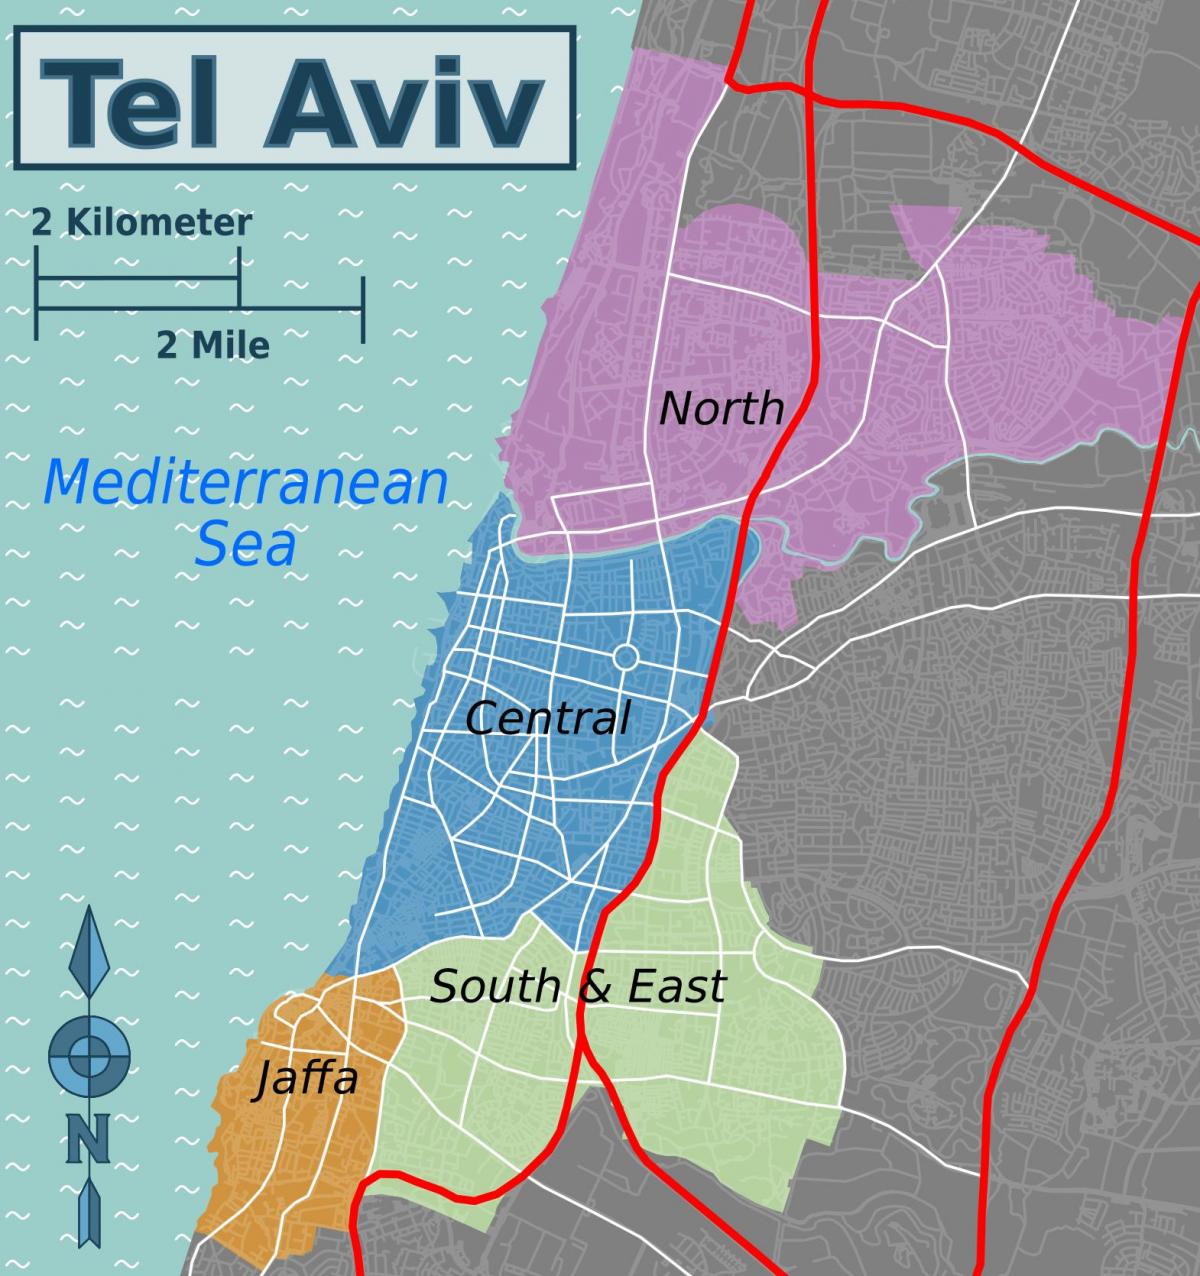 Stadtplan von Tel Aviv